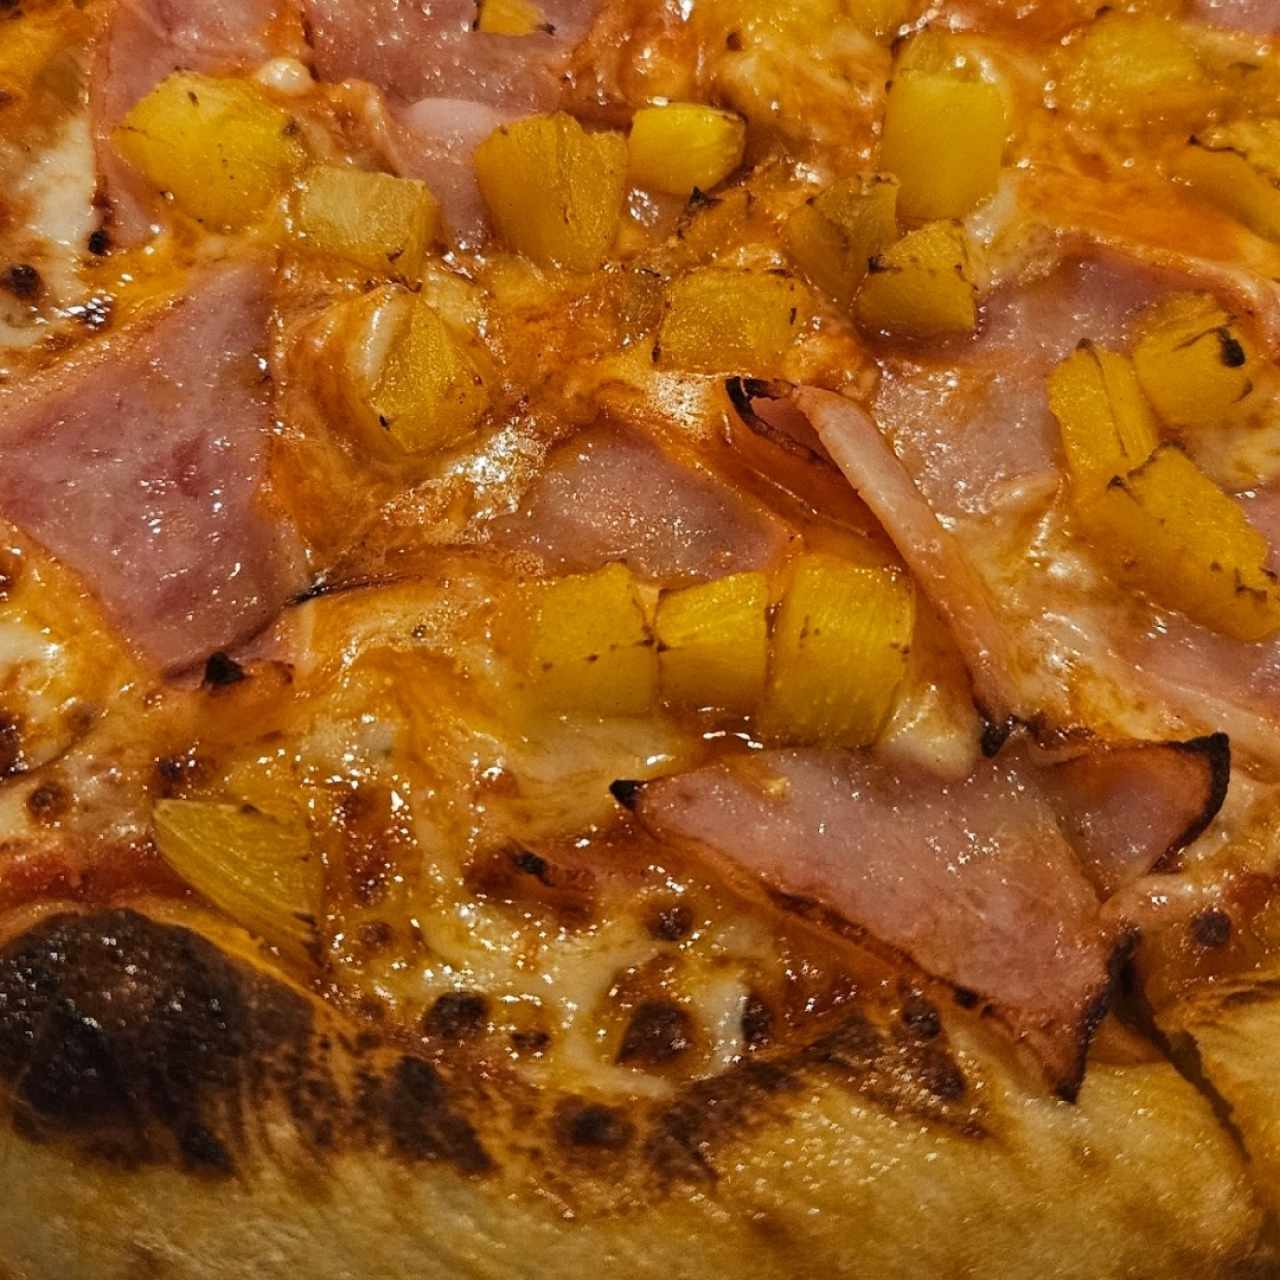 Pizza 12" - Hawaiiana